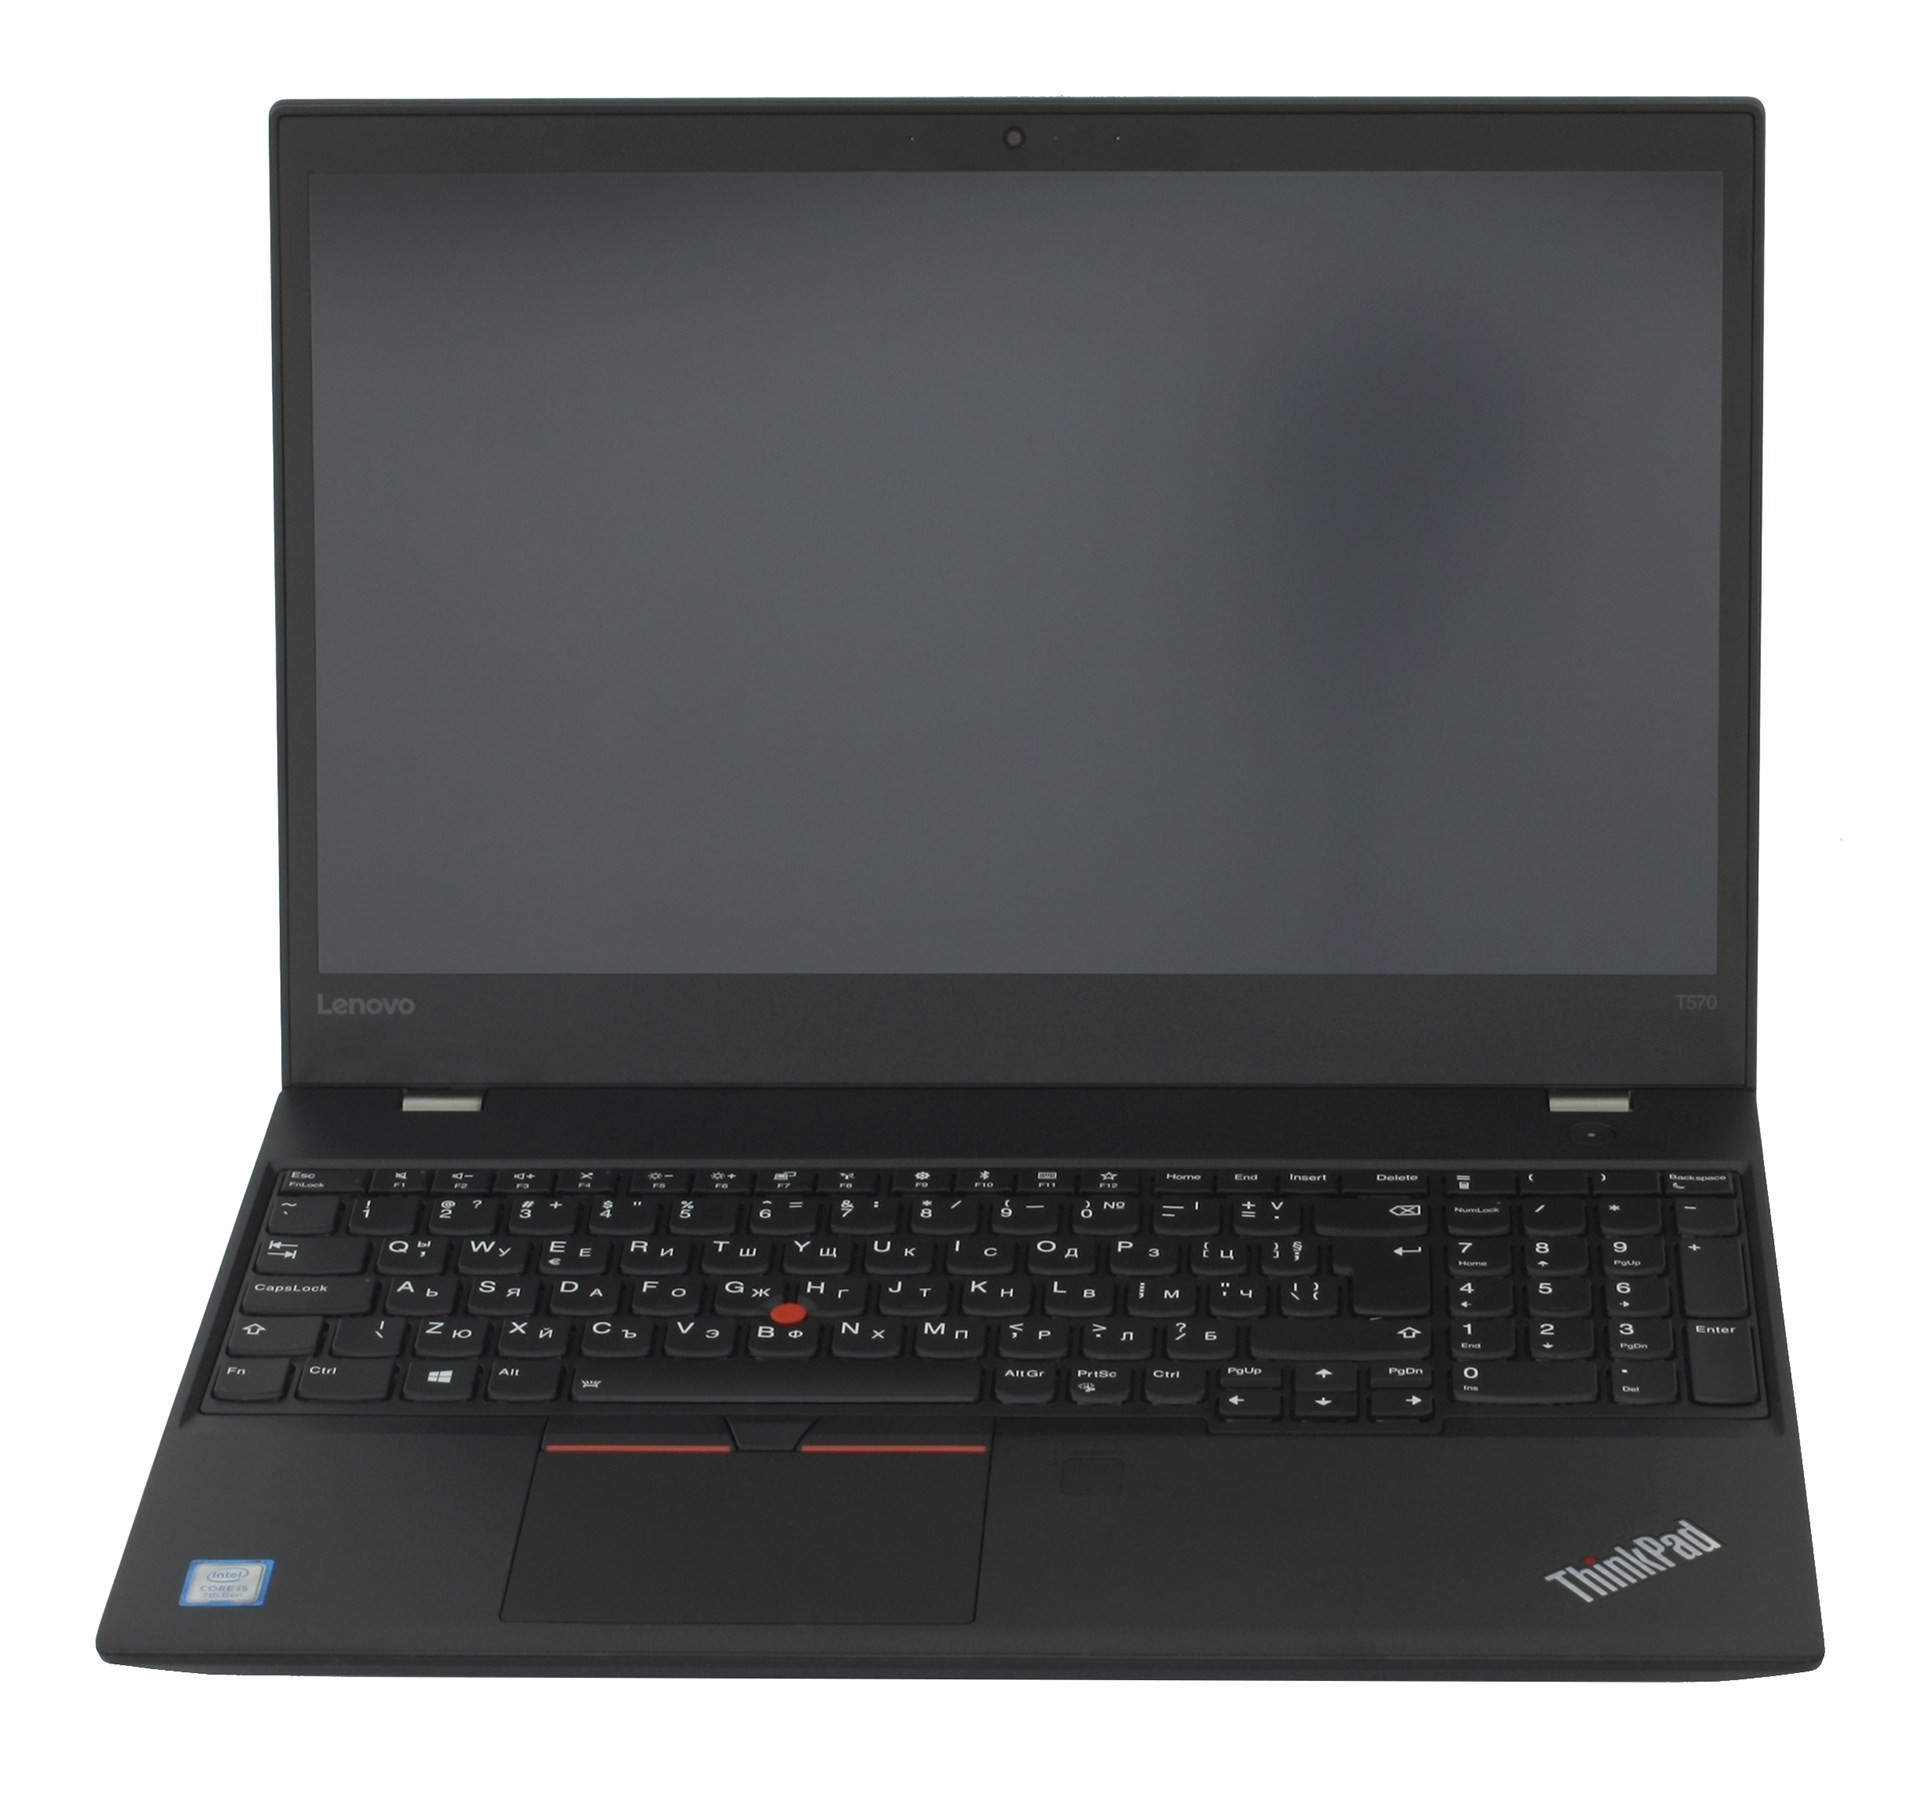 Lenovo ThinkPad T570 15.6" FHD i7-6600U 2.6GHz 8GB 256GB SSD W10P Laptop 20JW R